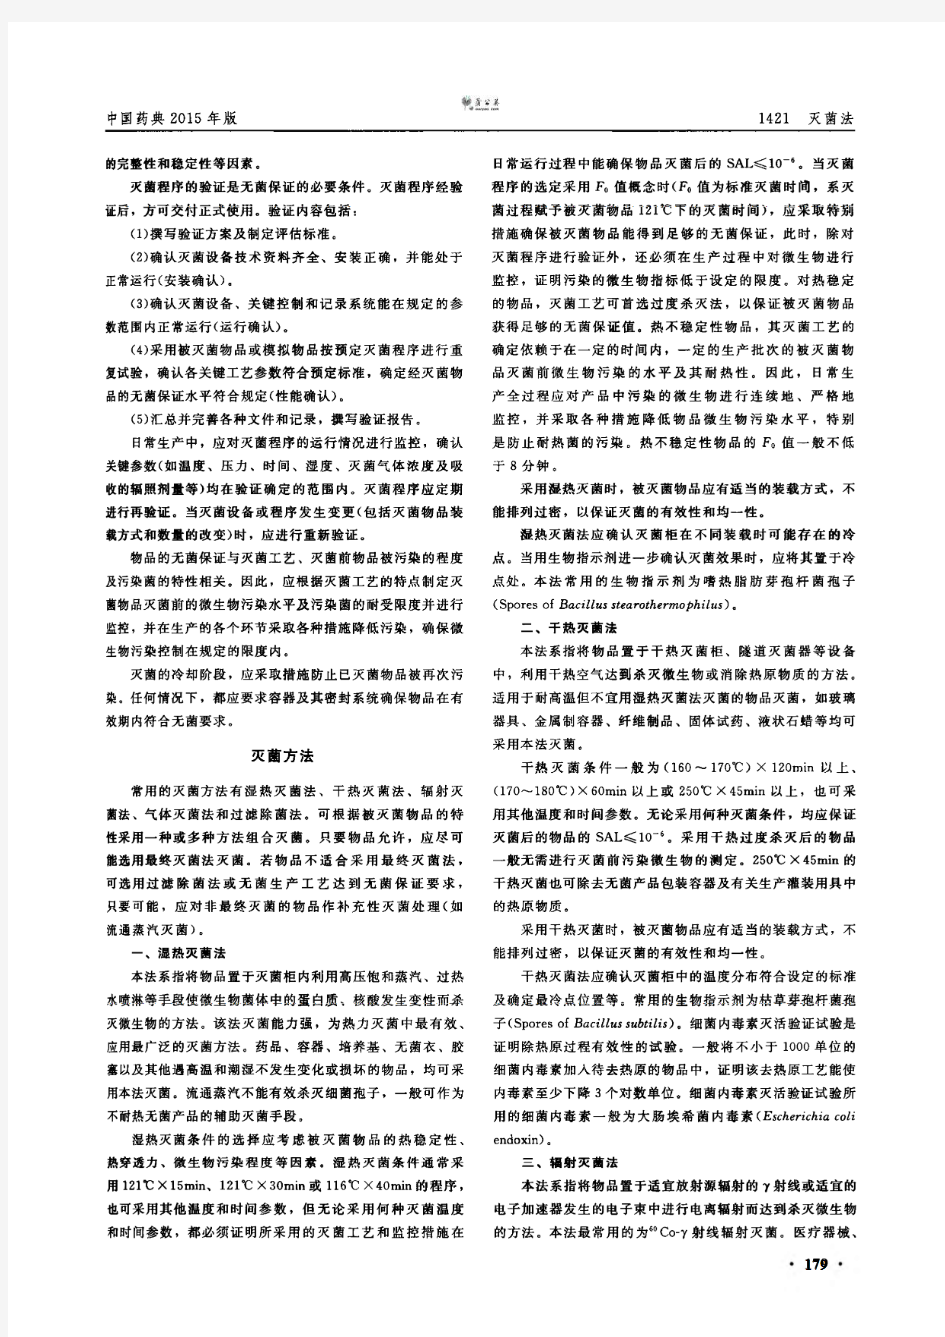 《中国药典》2015年版 第四部(通则1421 灭菌法)